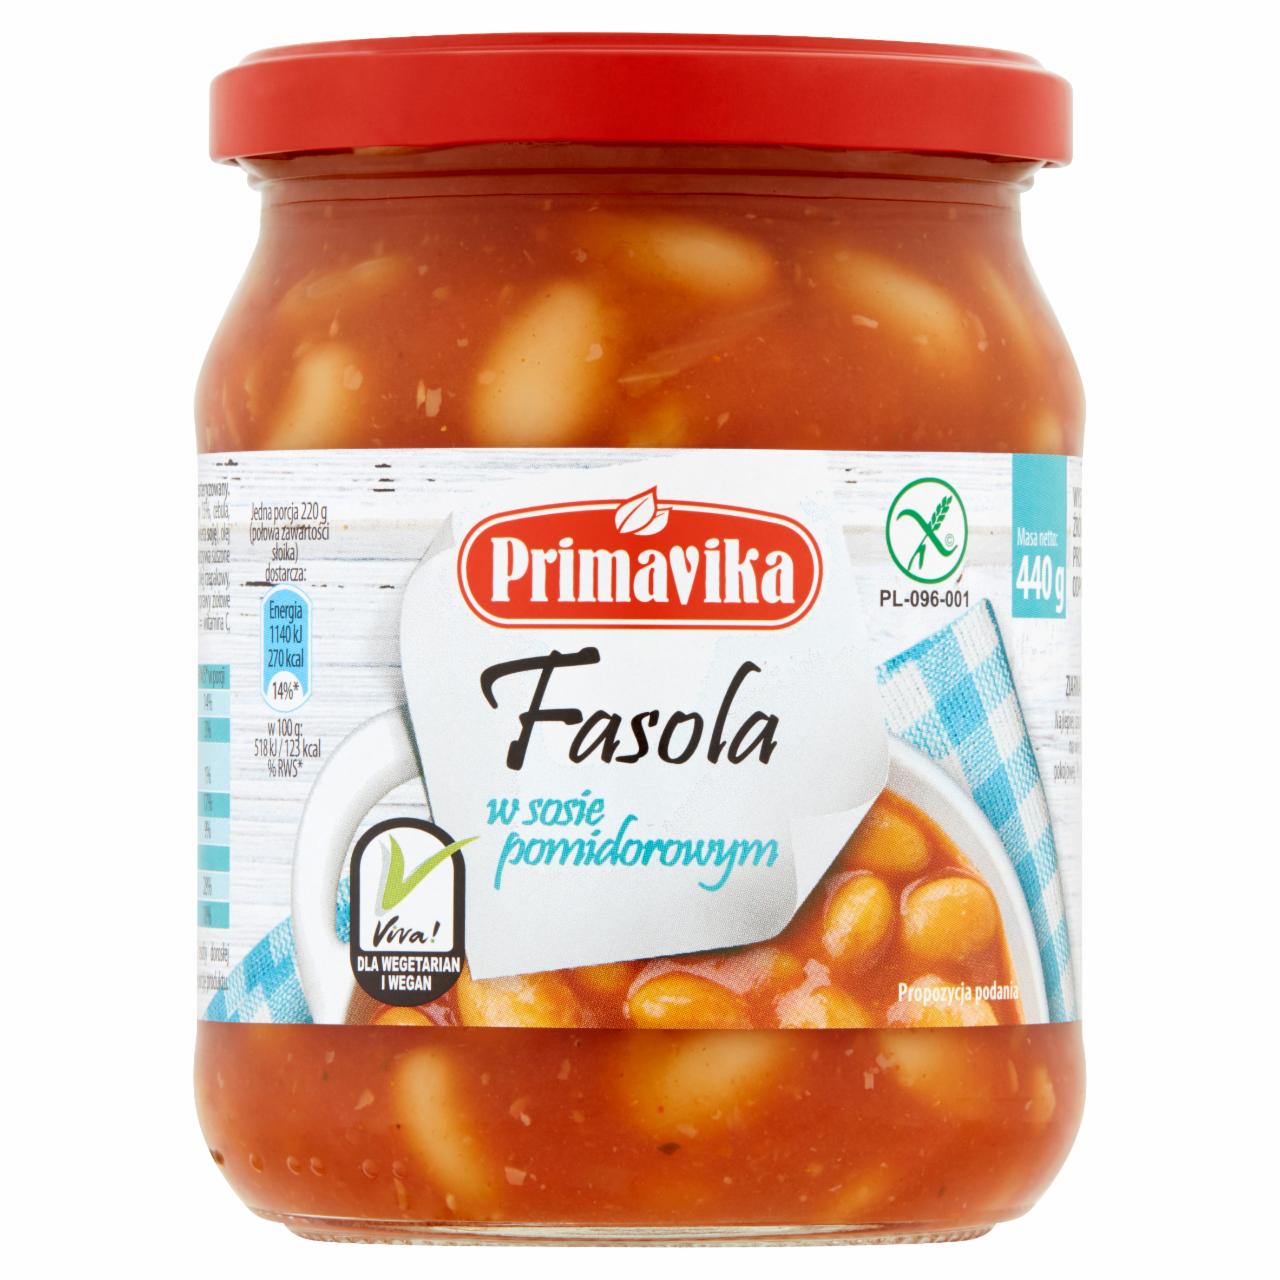 Zdjęcia - Primavika Fasola w sosie pomidorowym 440 g